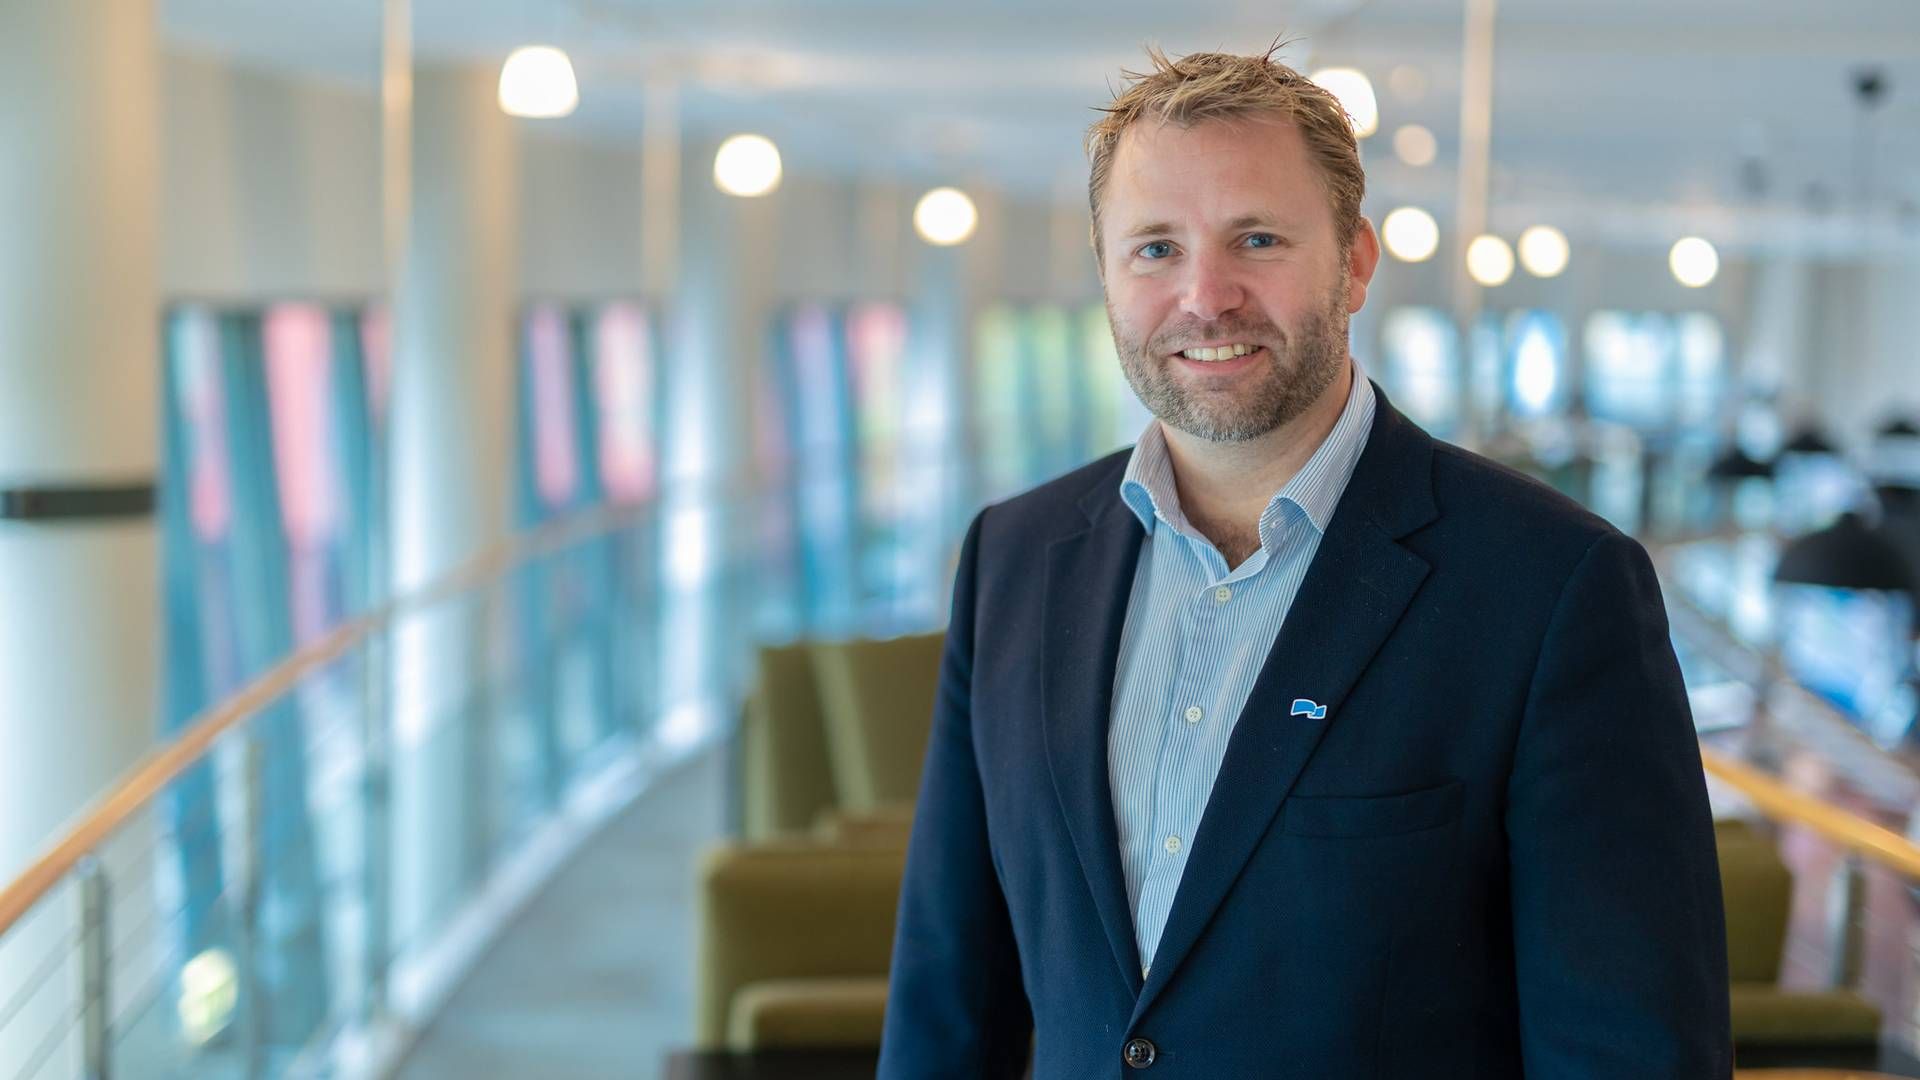 KAN BLI ORDFØRER: Advokat Arne Sekkelsten ligger an til å bli ordfører i Fredrikstad. | Foto: Hans Kristian Thorbjørnsen/Høyre